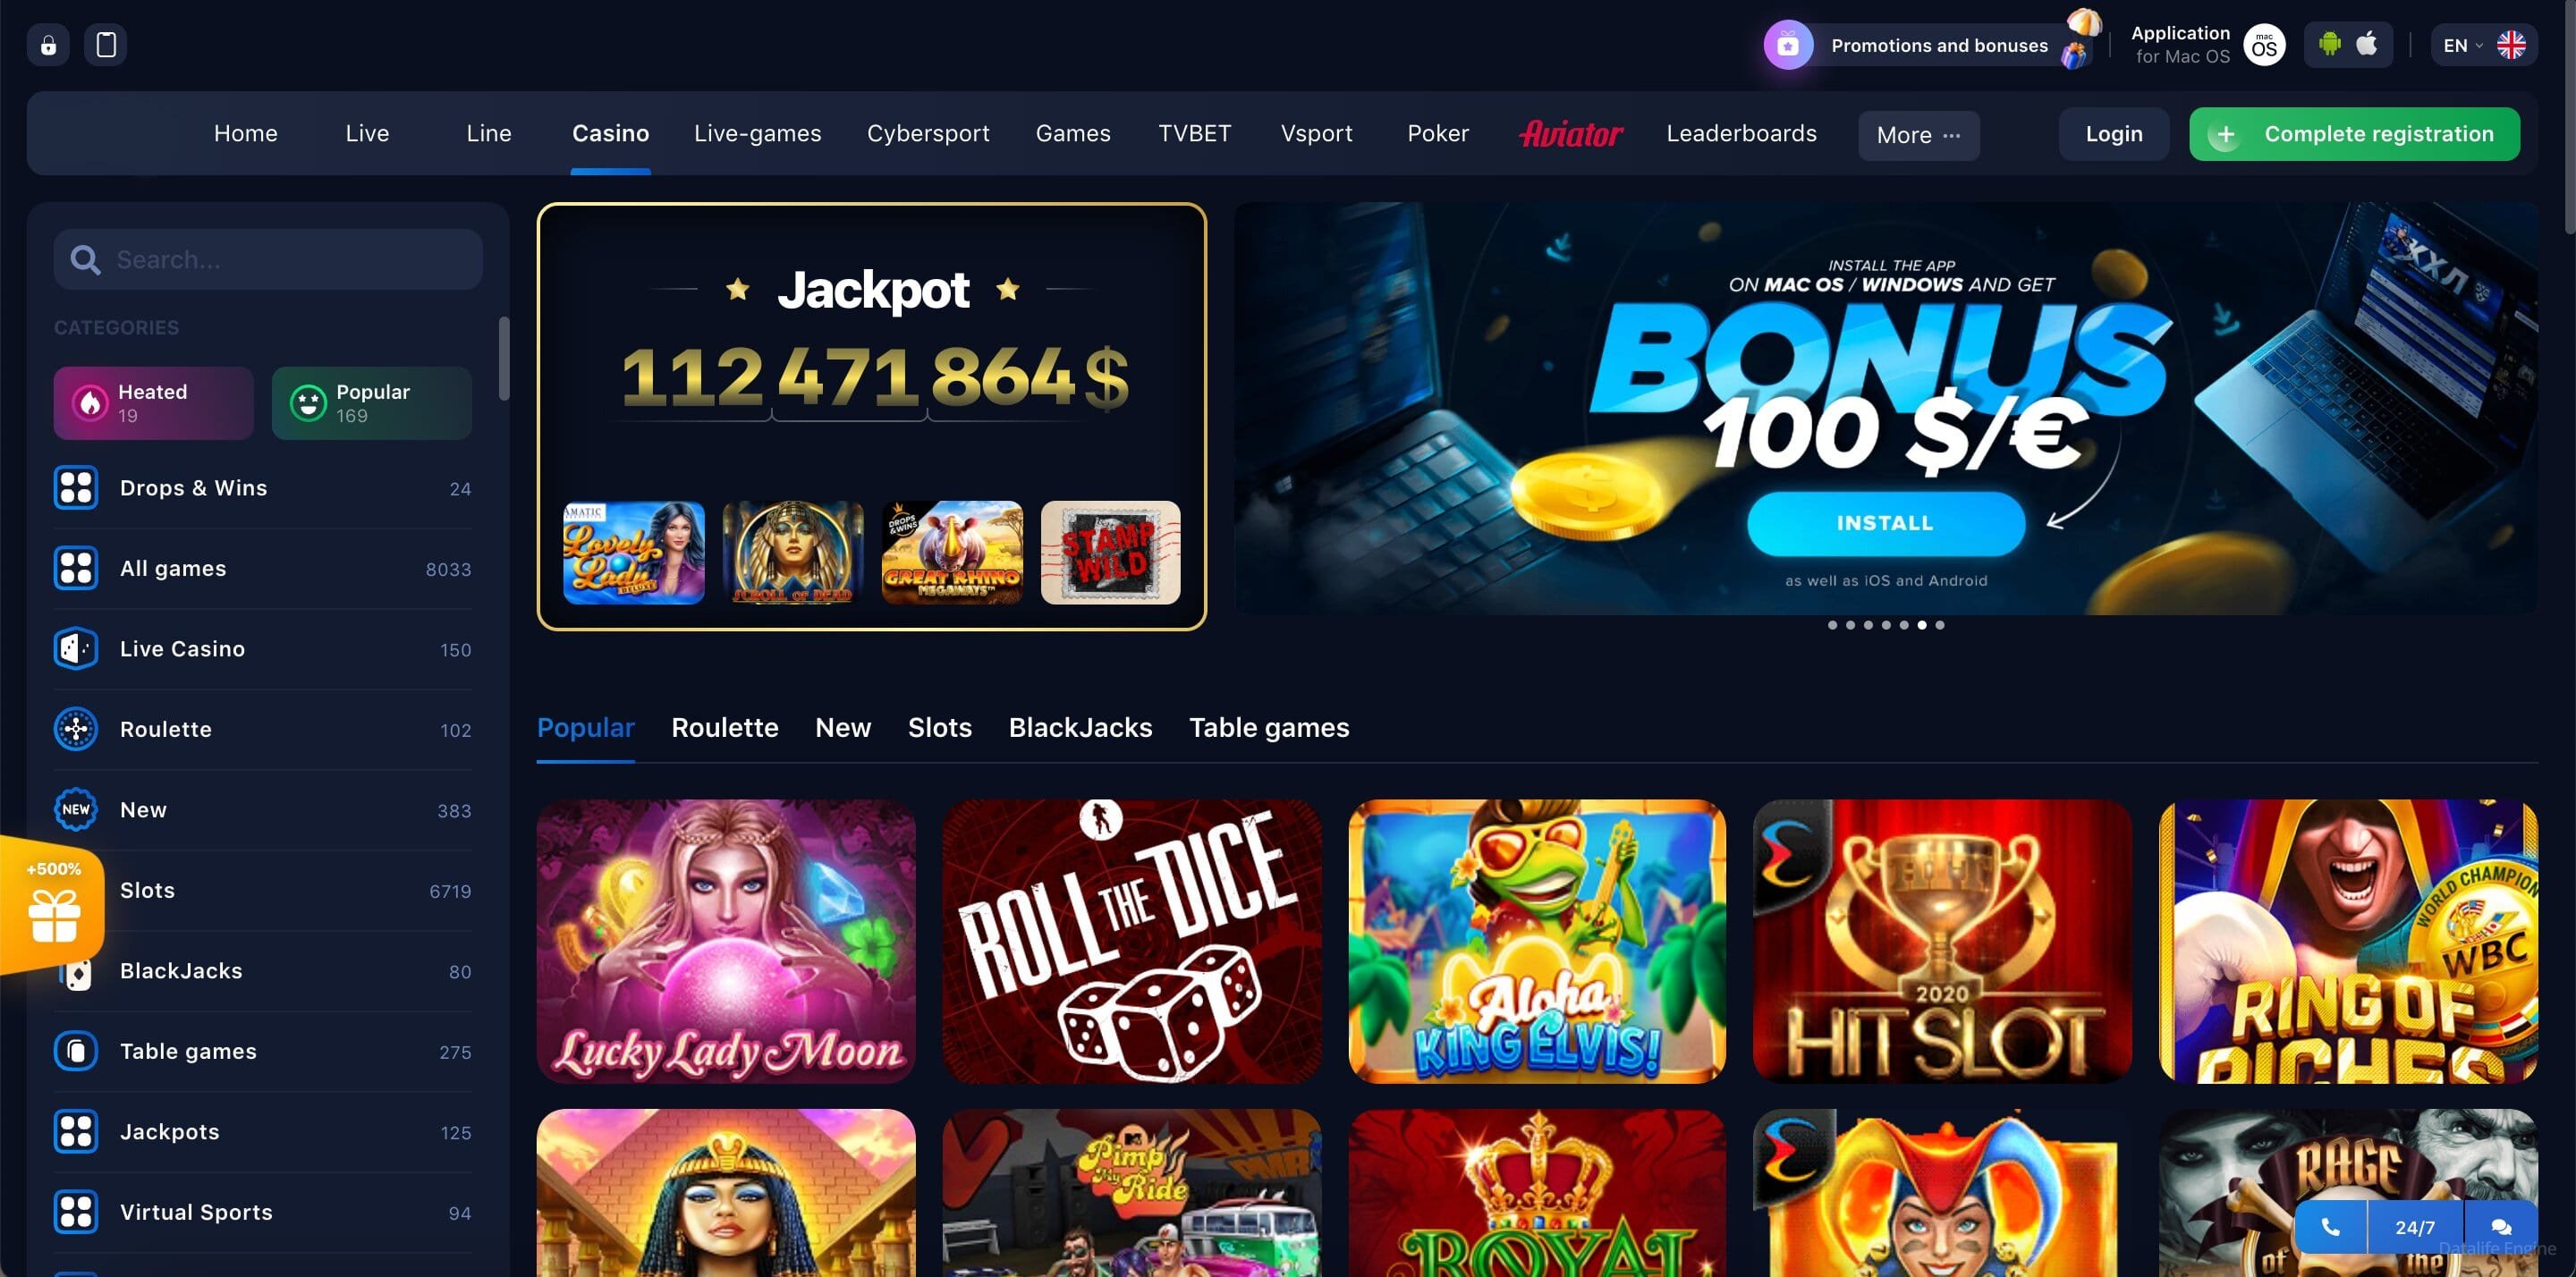 1 win casino online регистрация игровые автоматы вулкан вип клубы